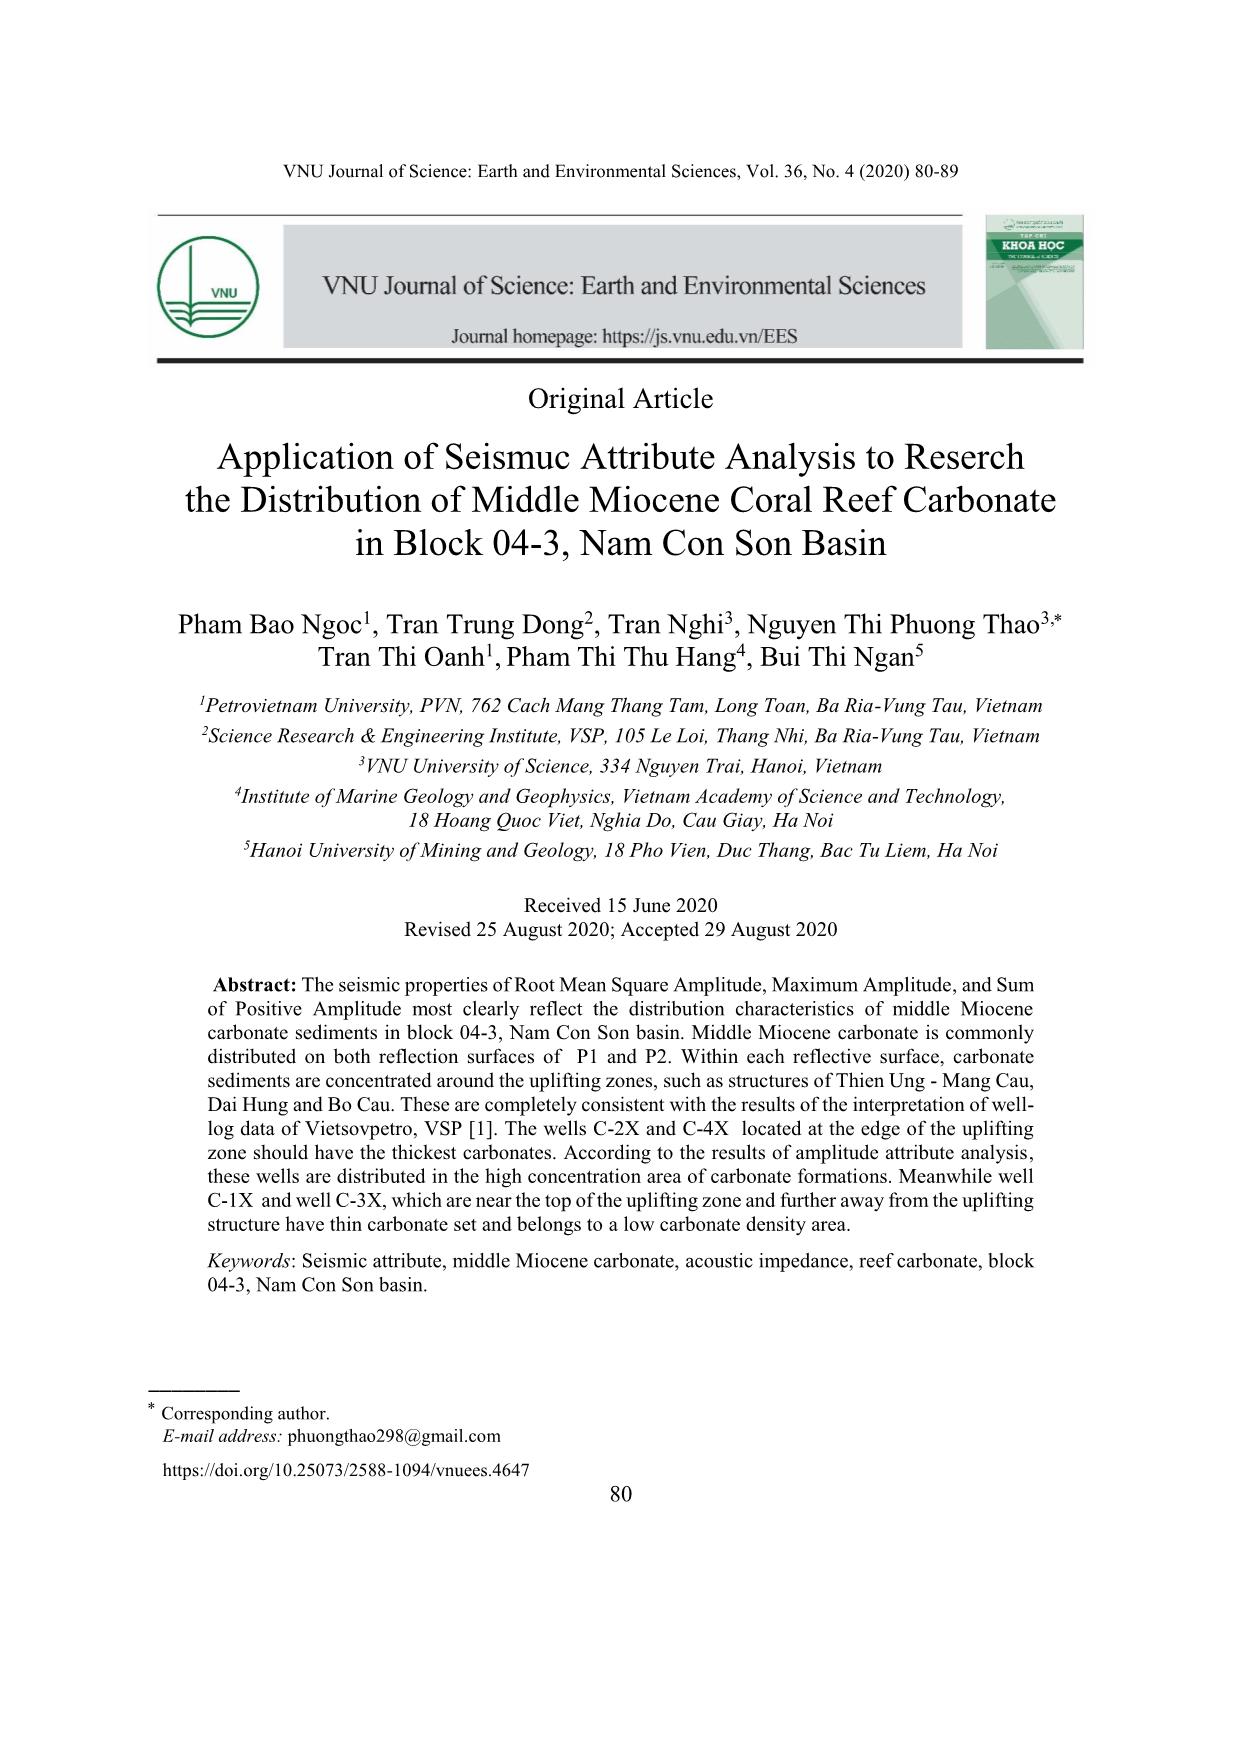 Đặc điểm phân bố trầm tích cacbonat ám tiêu Miocen giữa, Lô 04-3, bể Nam Côn Sơn trên cơ sở phân tích thuộc tính địa chấn trang 1